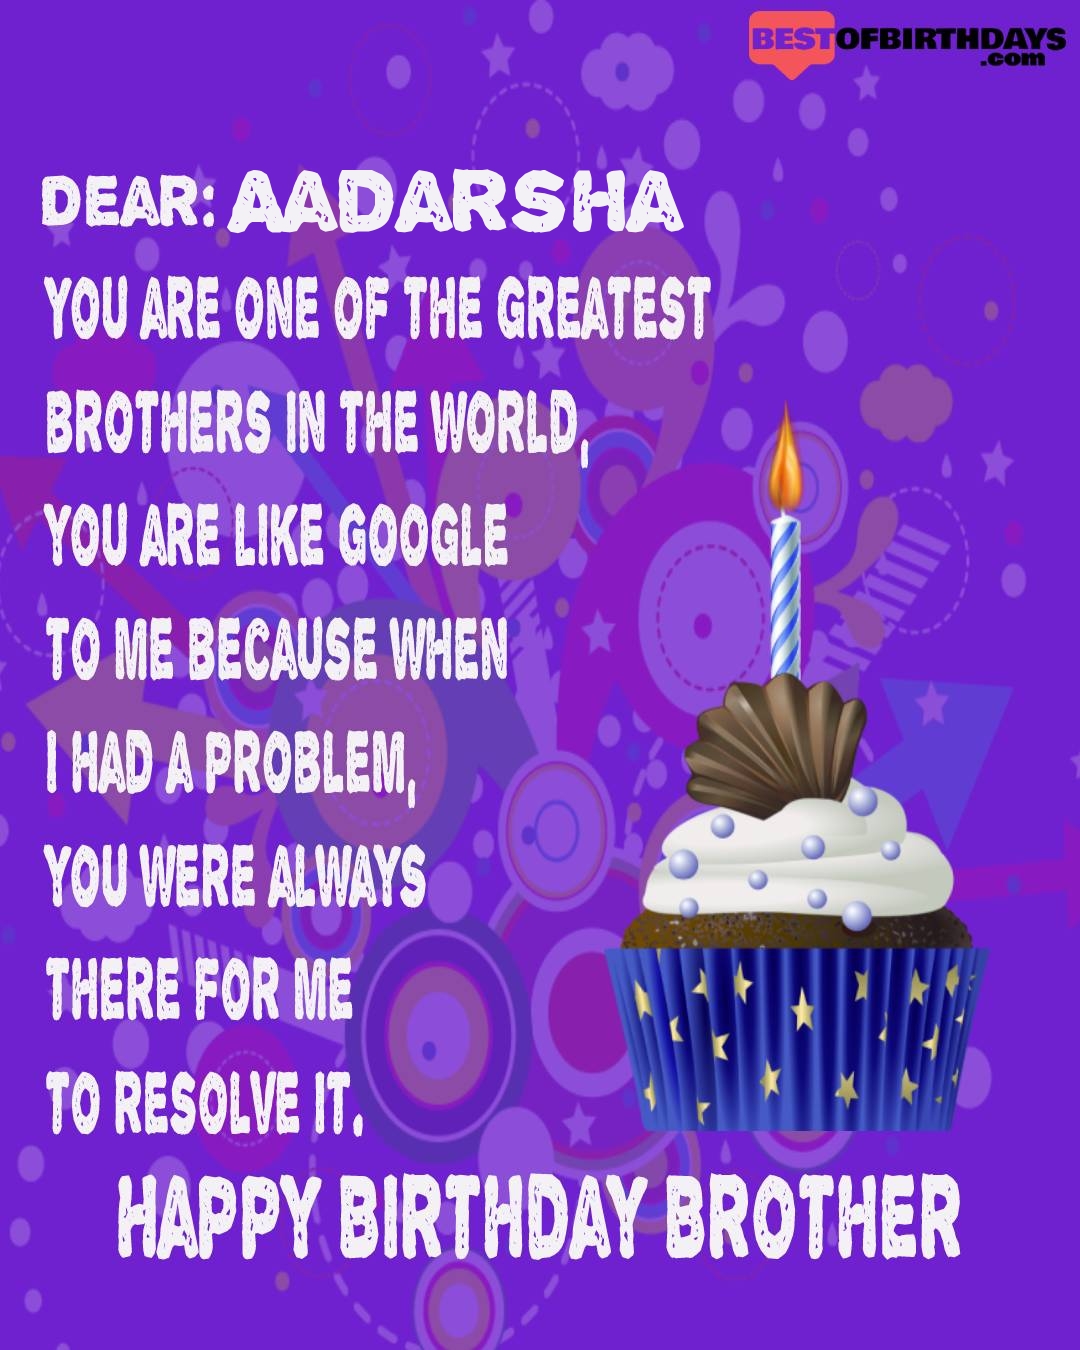 Happy birthday aadarsha bhai brother bro